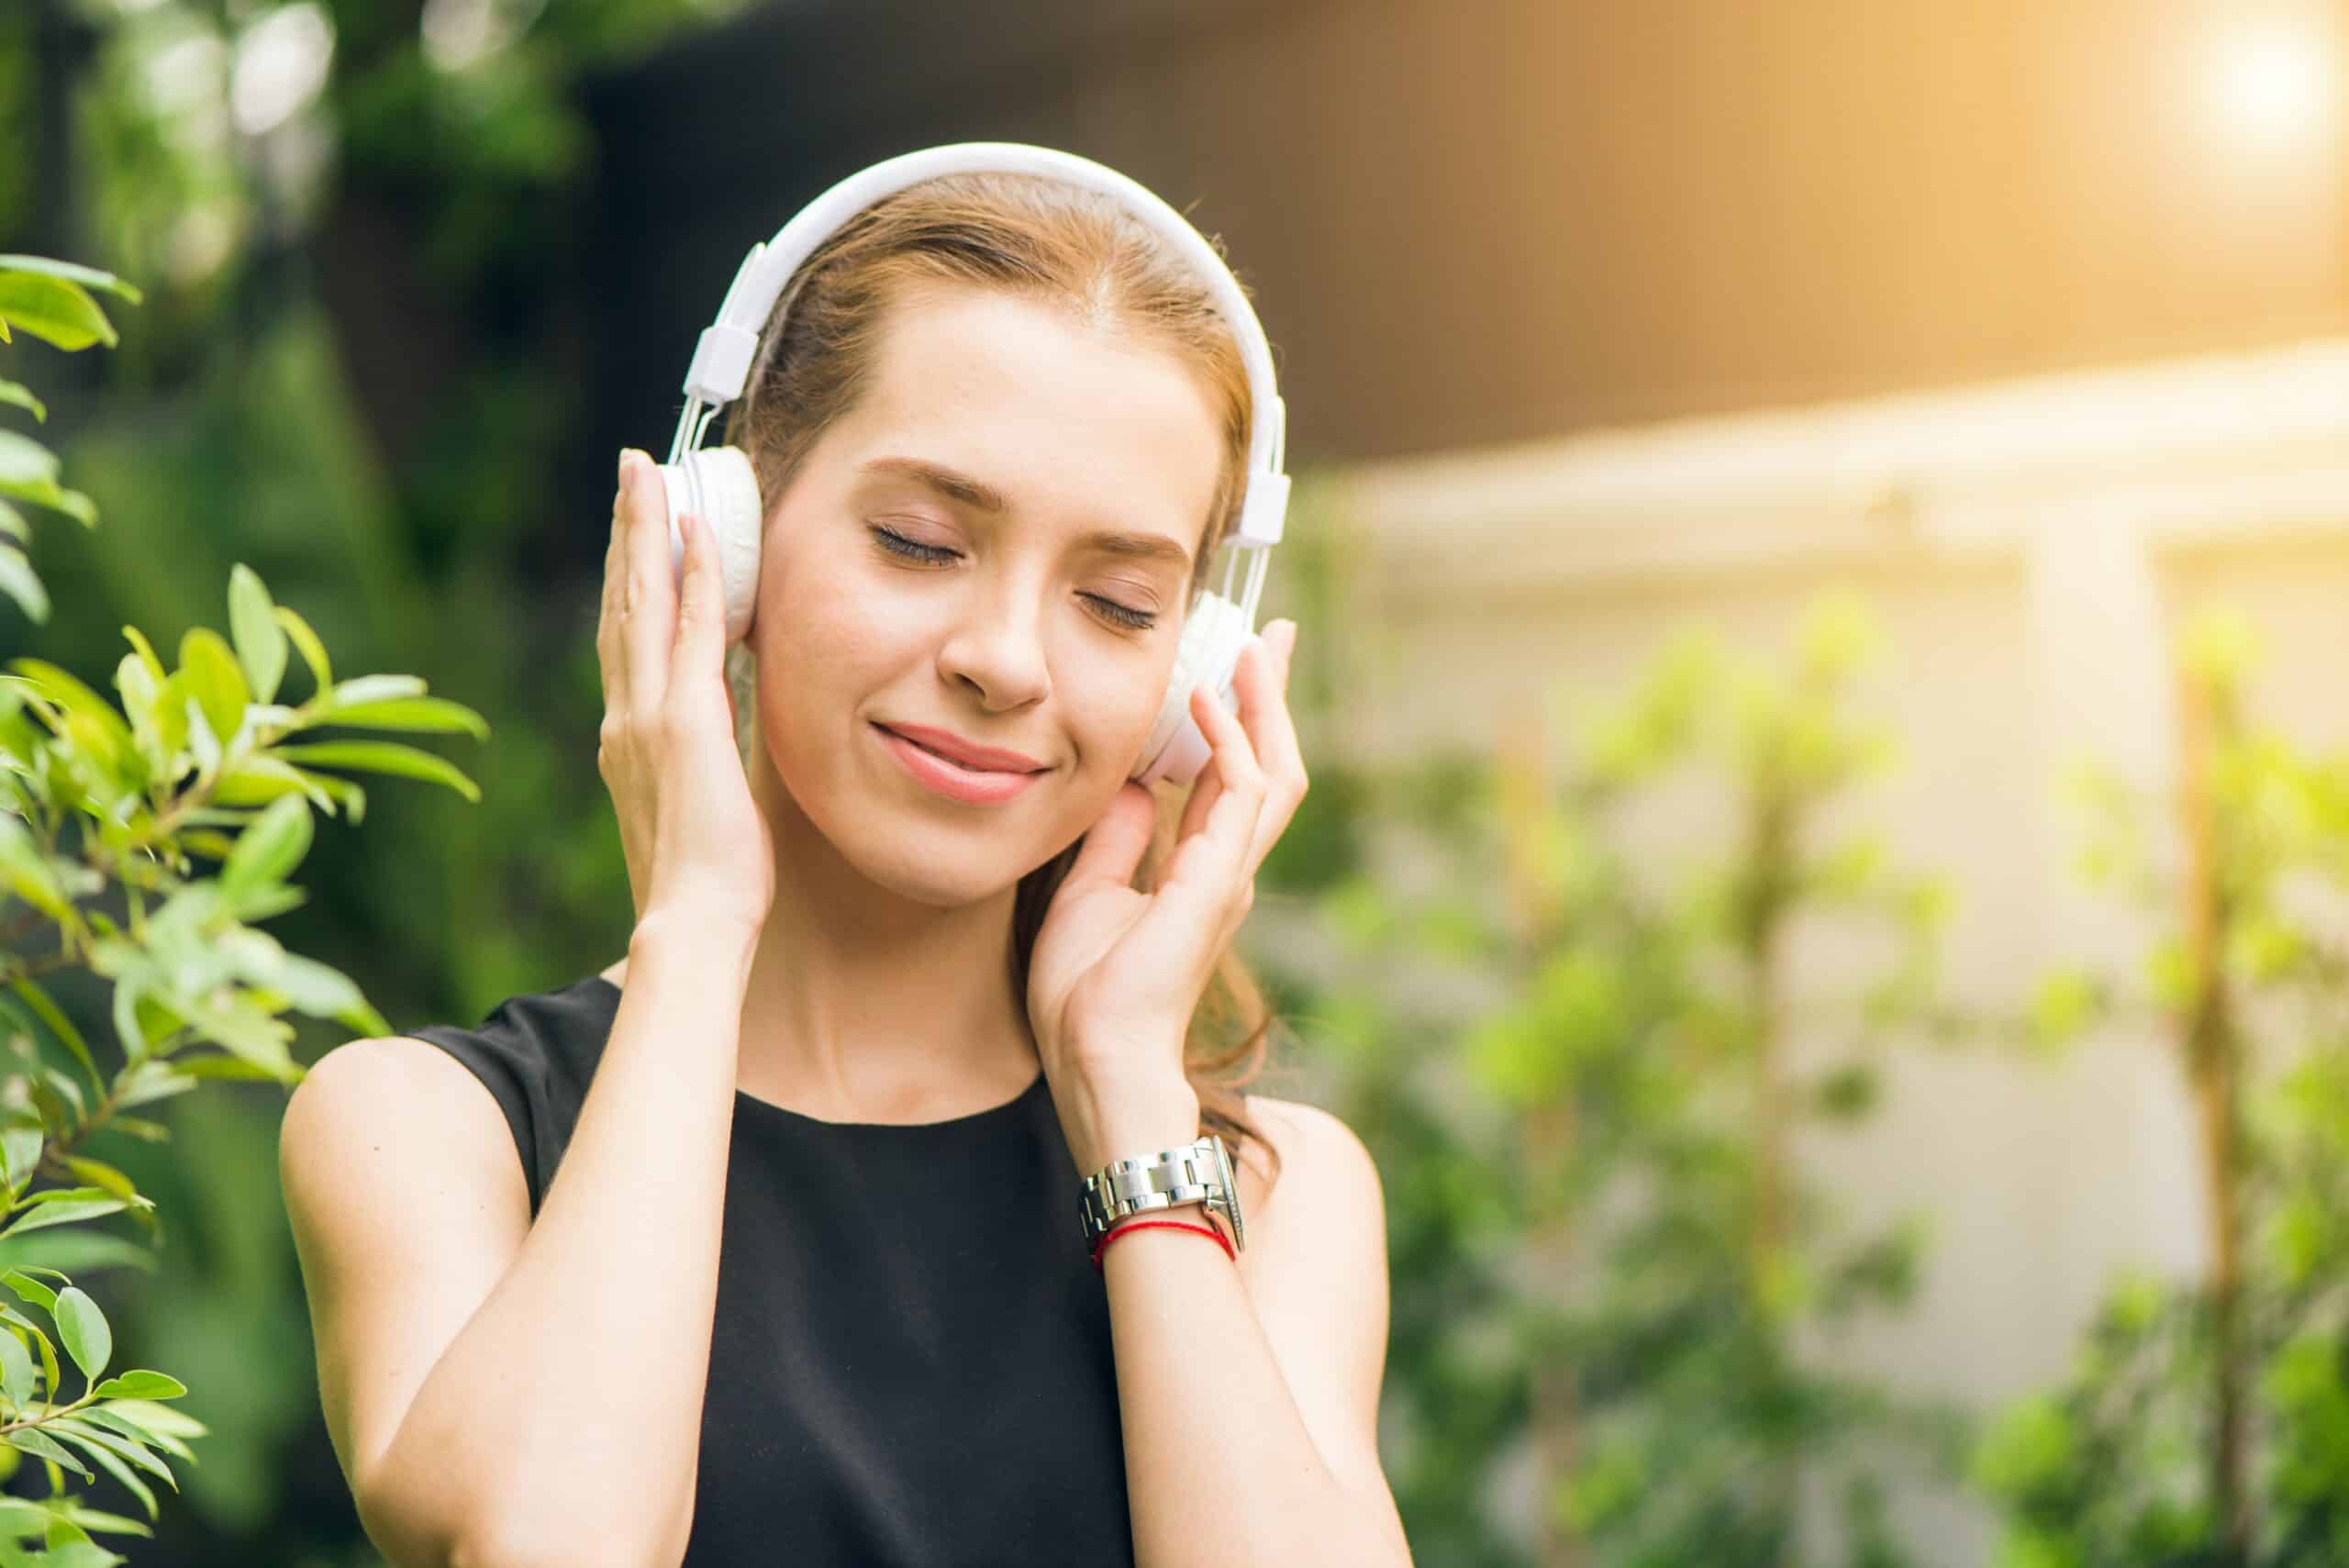 Ilustrasi Platform Musik Streaming: Dengar Jutaan Lagu dengan Sekali Klik!/Photo by Tirachard Kumtanom: https://www.pexels.com/photo/woman-wearing-black-sleeveless-dress-holding-white-headphone-at-daytime-1001850/